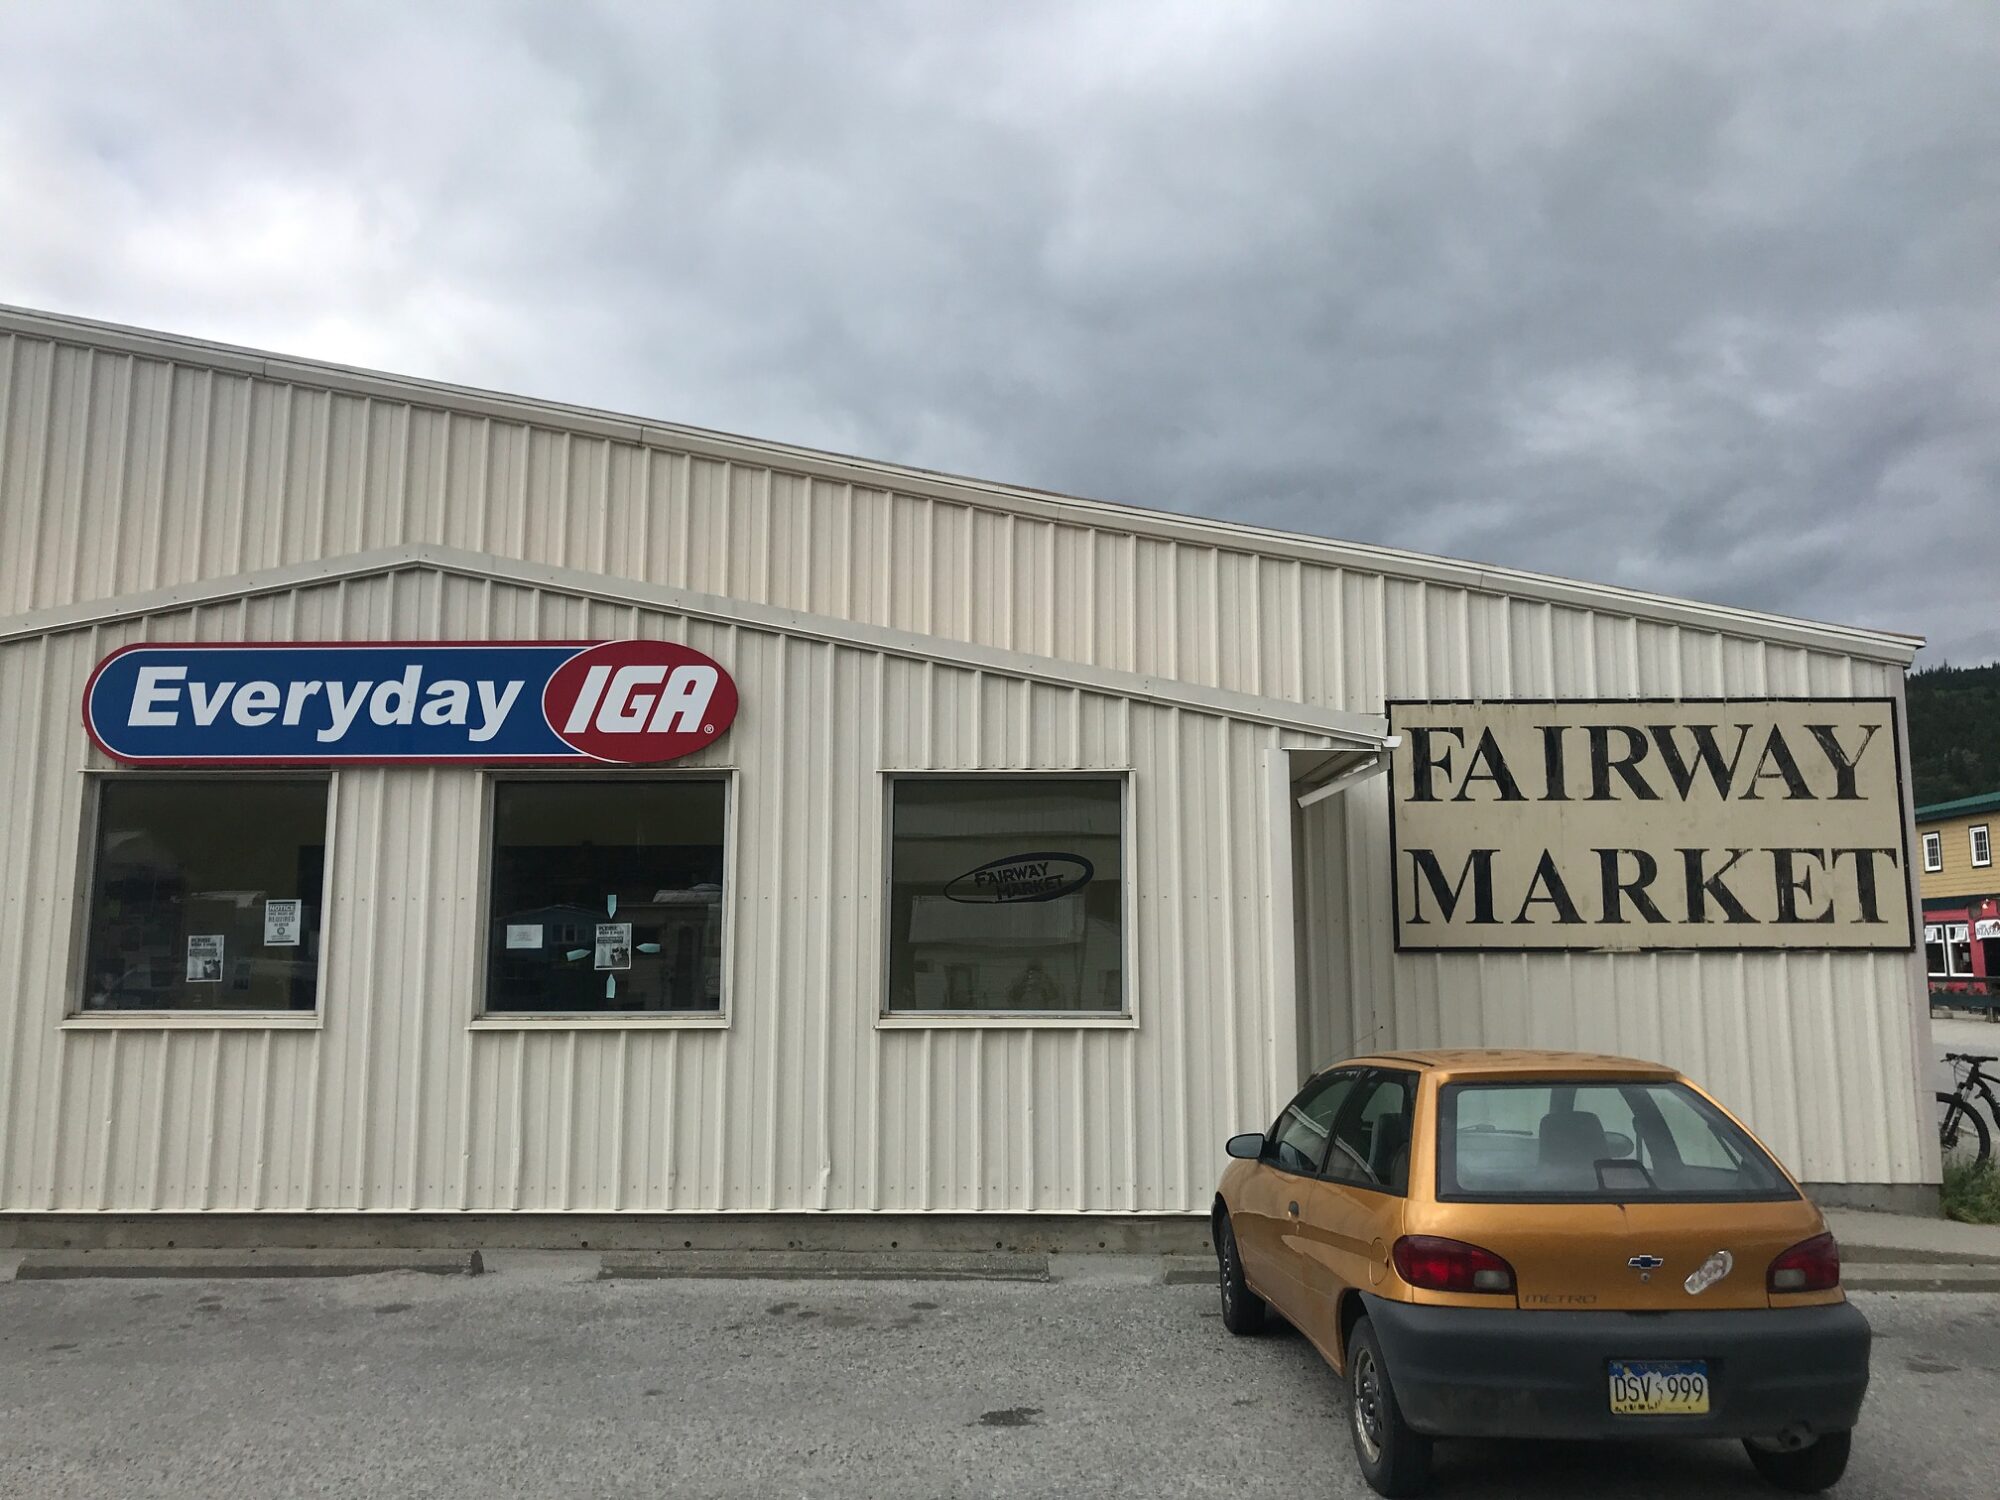 Skagways Fairway Market sold to regional chain KHNS Radio KHNS FM